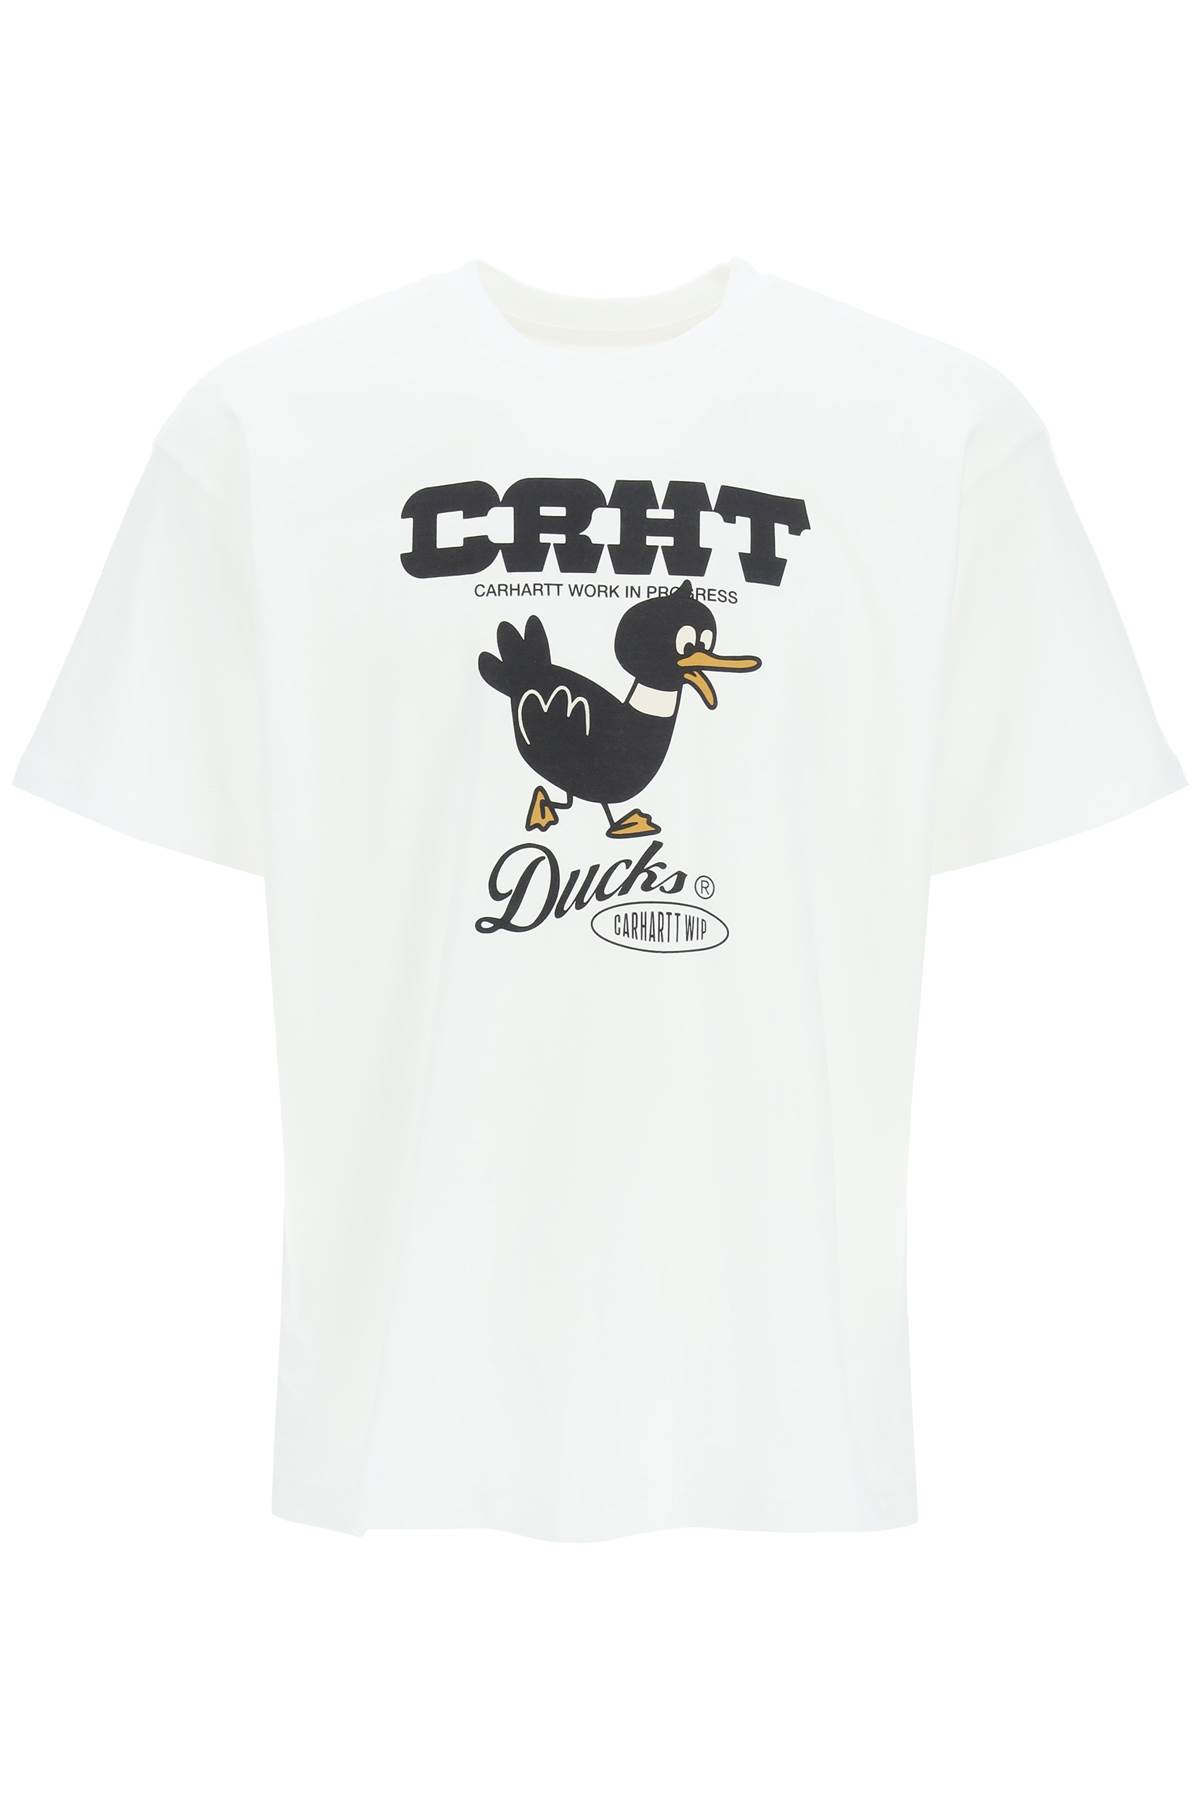 Carhartt Ducks T-shirt